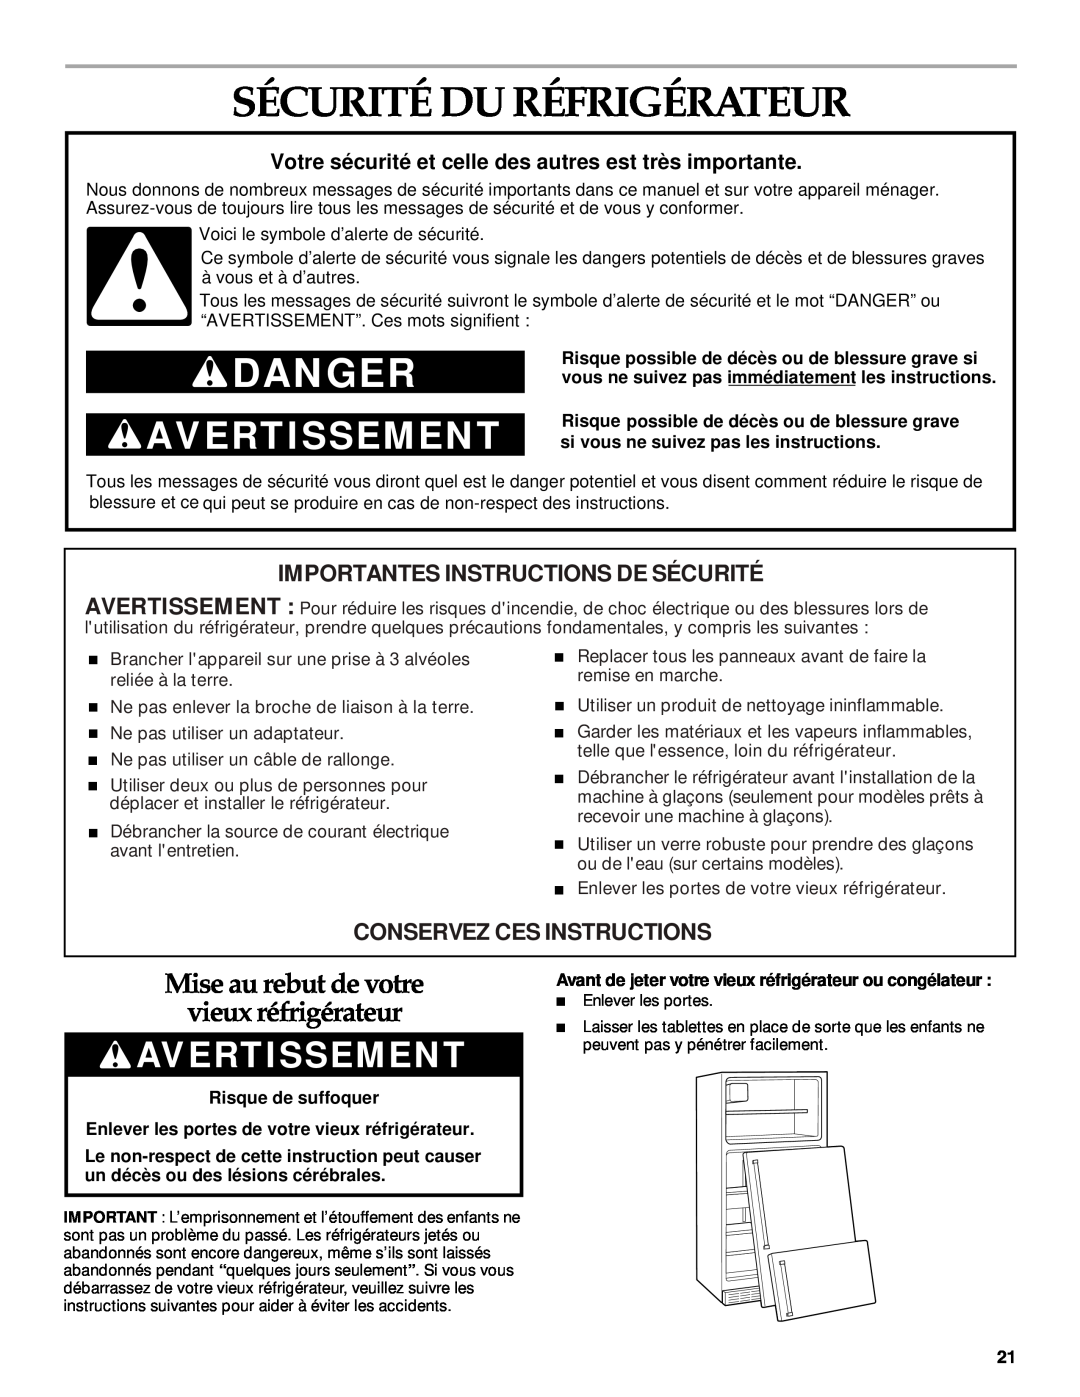 KitchenAid 2205264 manual Sécurité Du Réfrigérateur, Avertissement, Mise au rebut de votre vieux réfrigérateur, Danger 